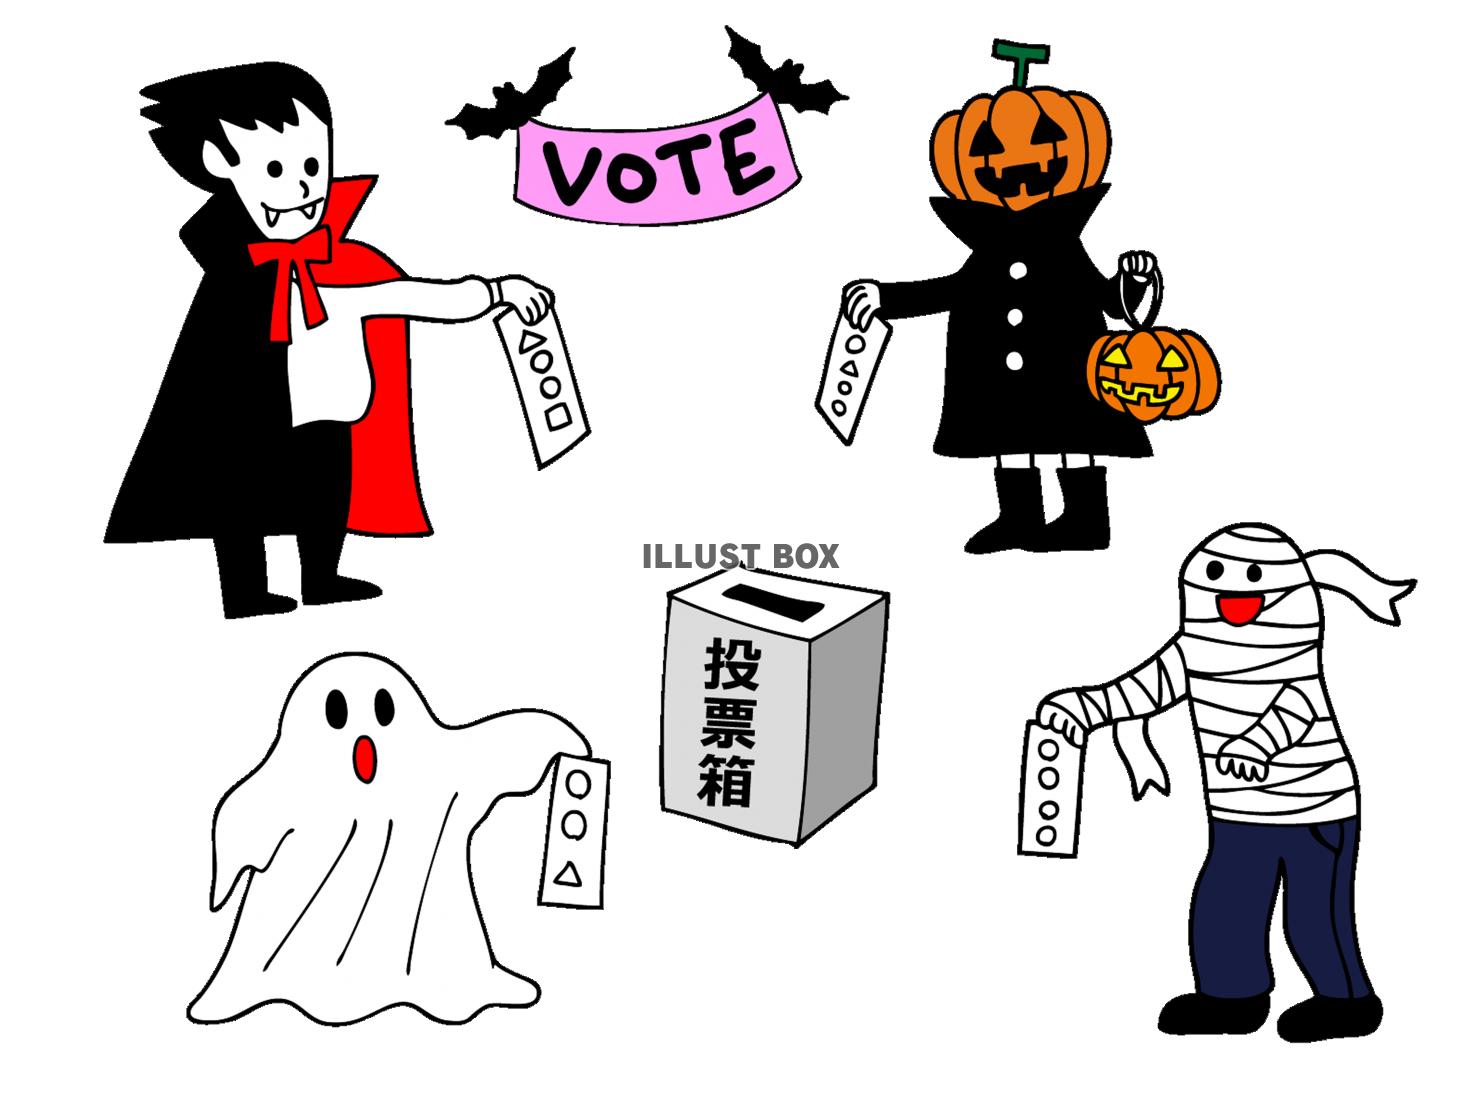 ハロウィンの仮装で投票するイラスト